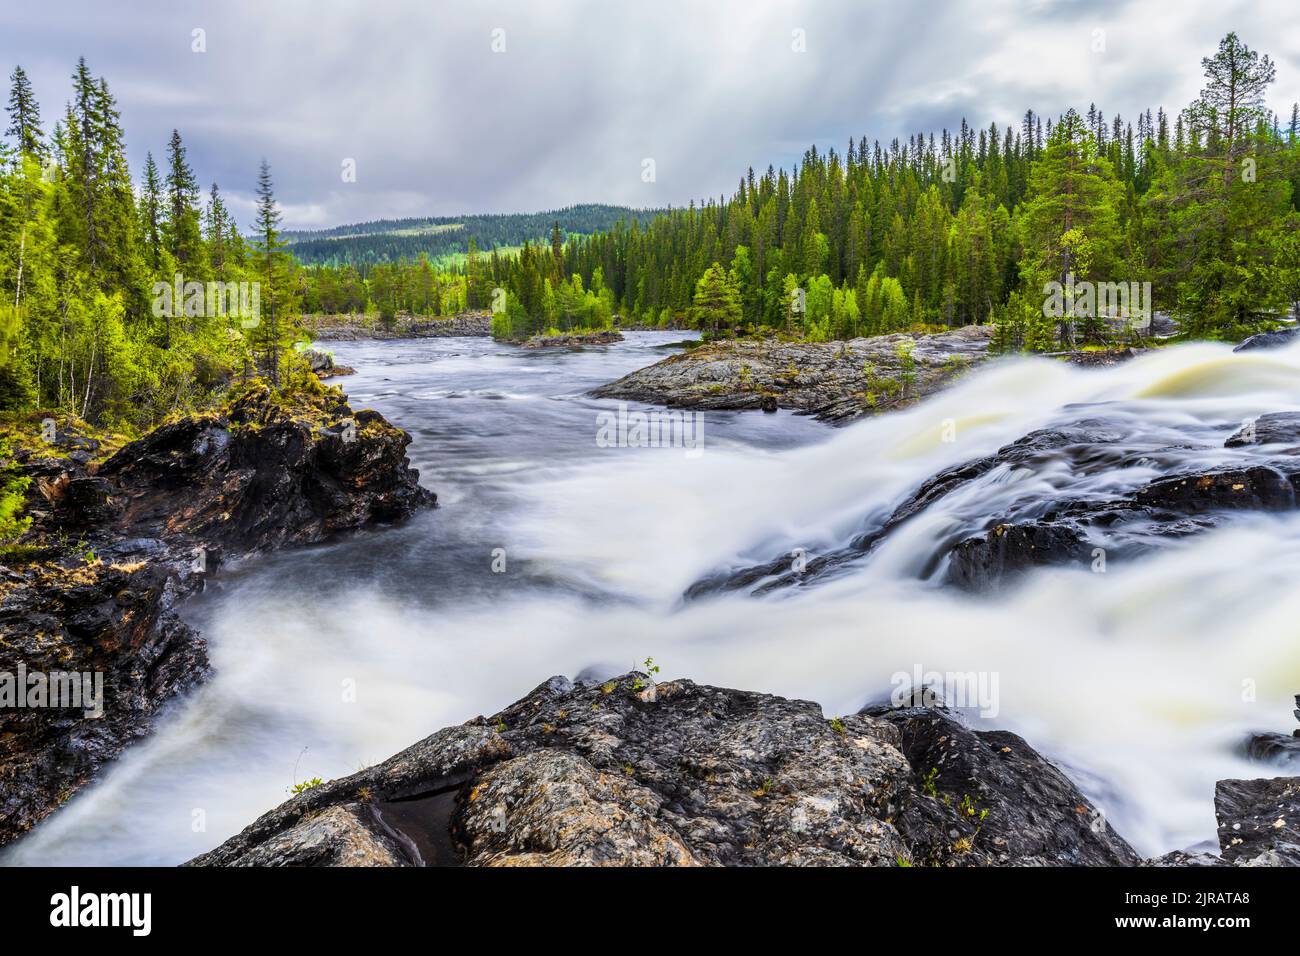 Sweden, Vasterbotten County, Long exposure of Dimforsen waterfall Stock Photo